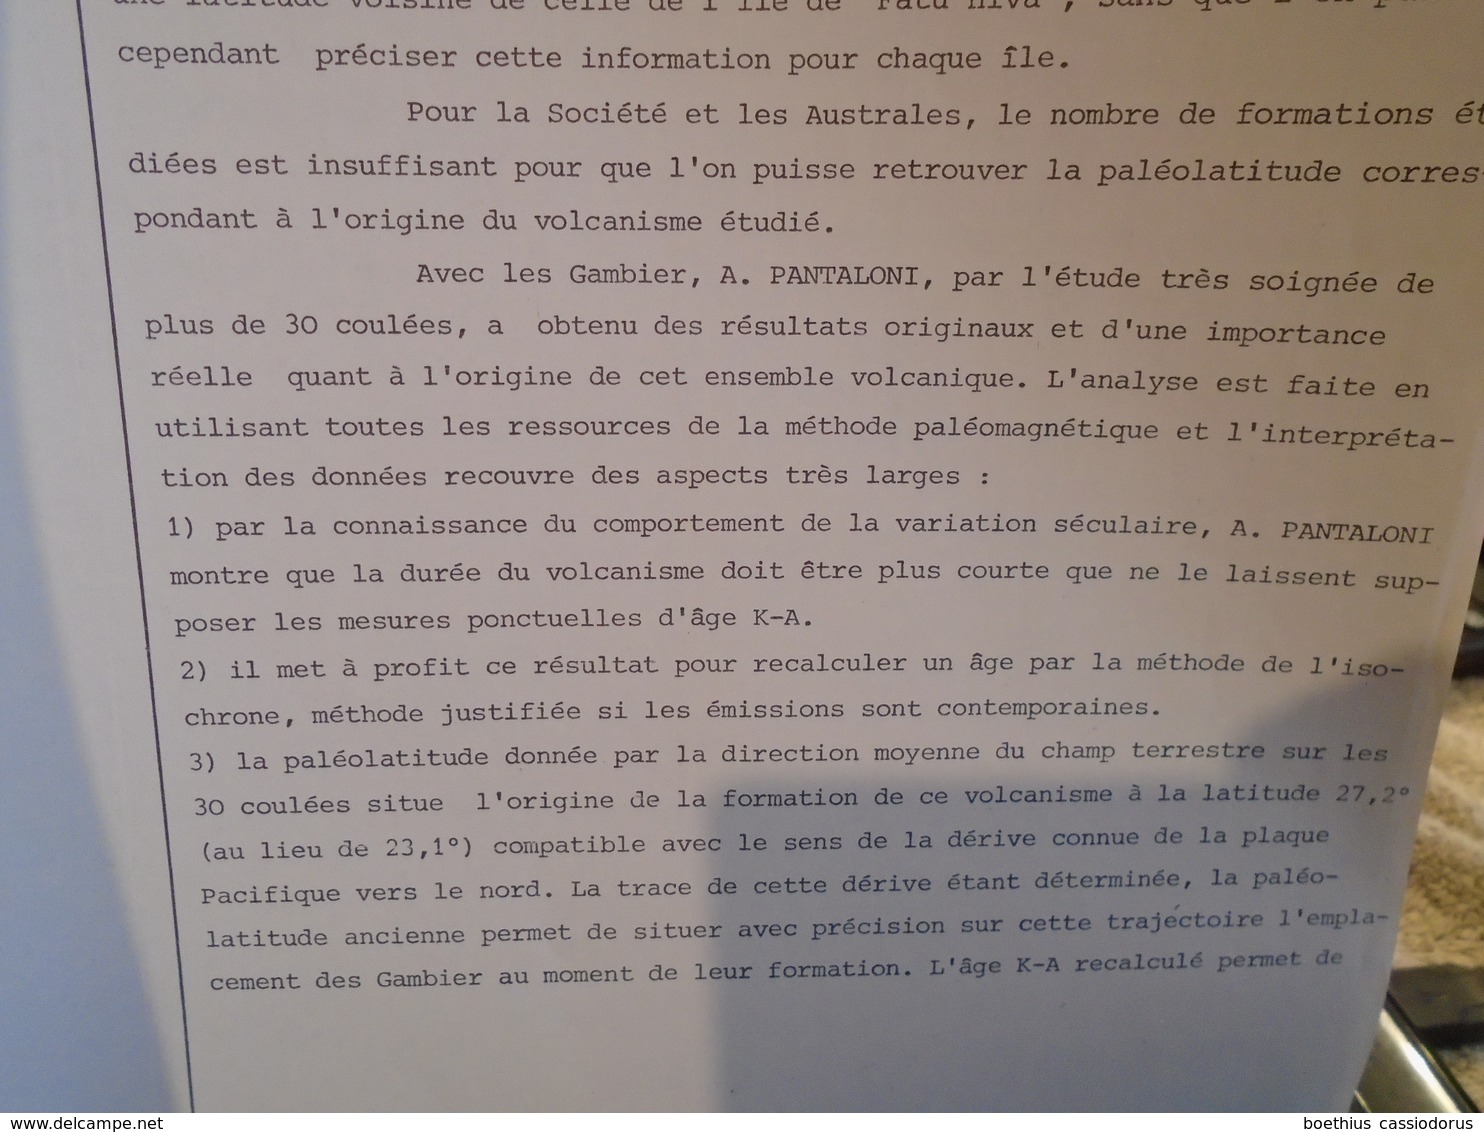 CONTRIBUTION AU PALEOMAGNETISME DES ILES DE LA POLYNESIE FRANCAISE  ANTOINE PANTALONI  1976